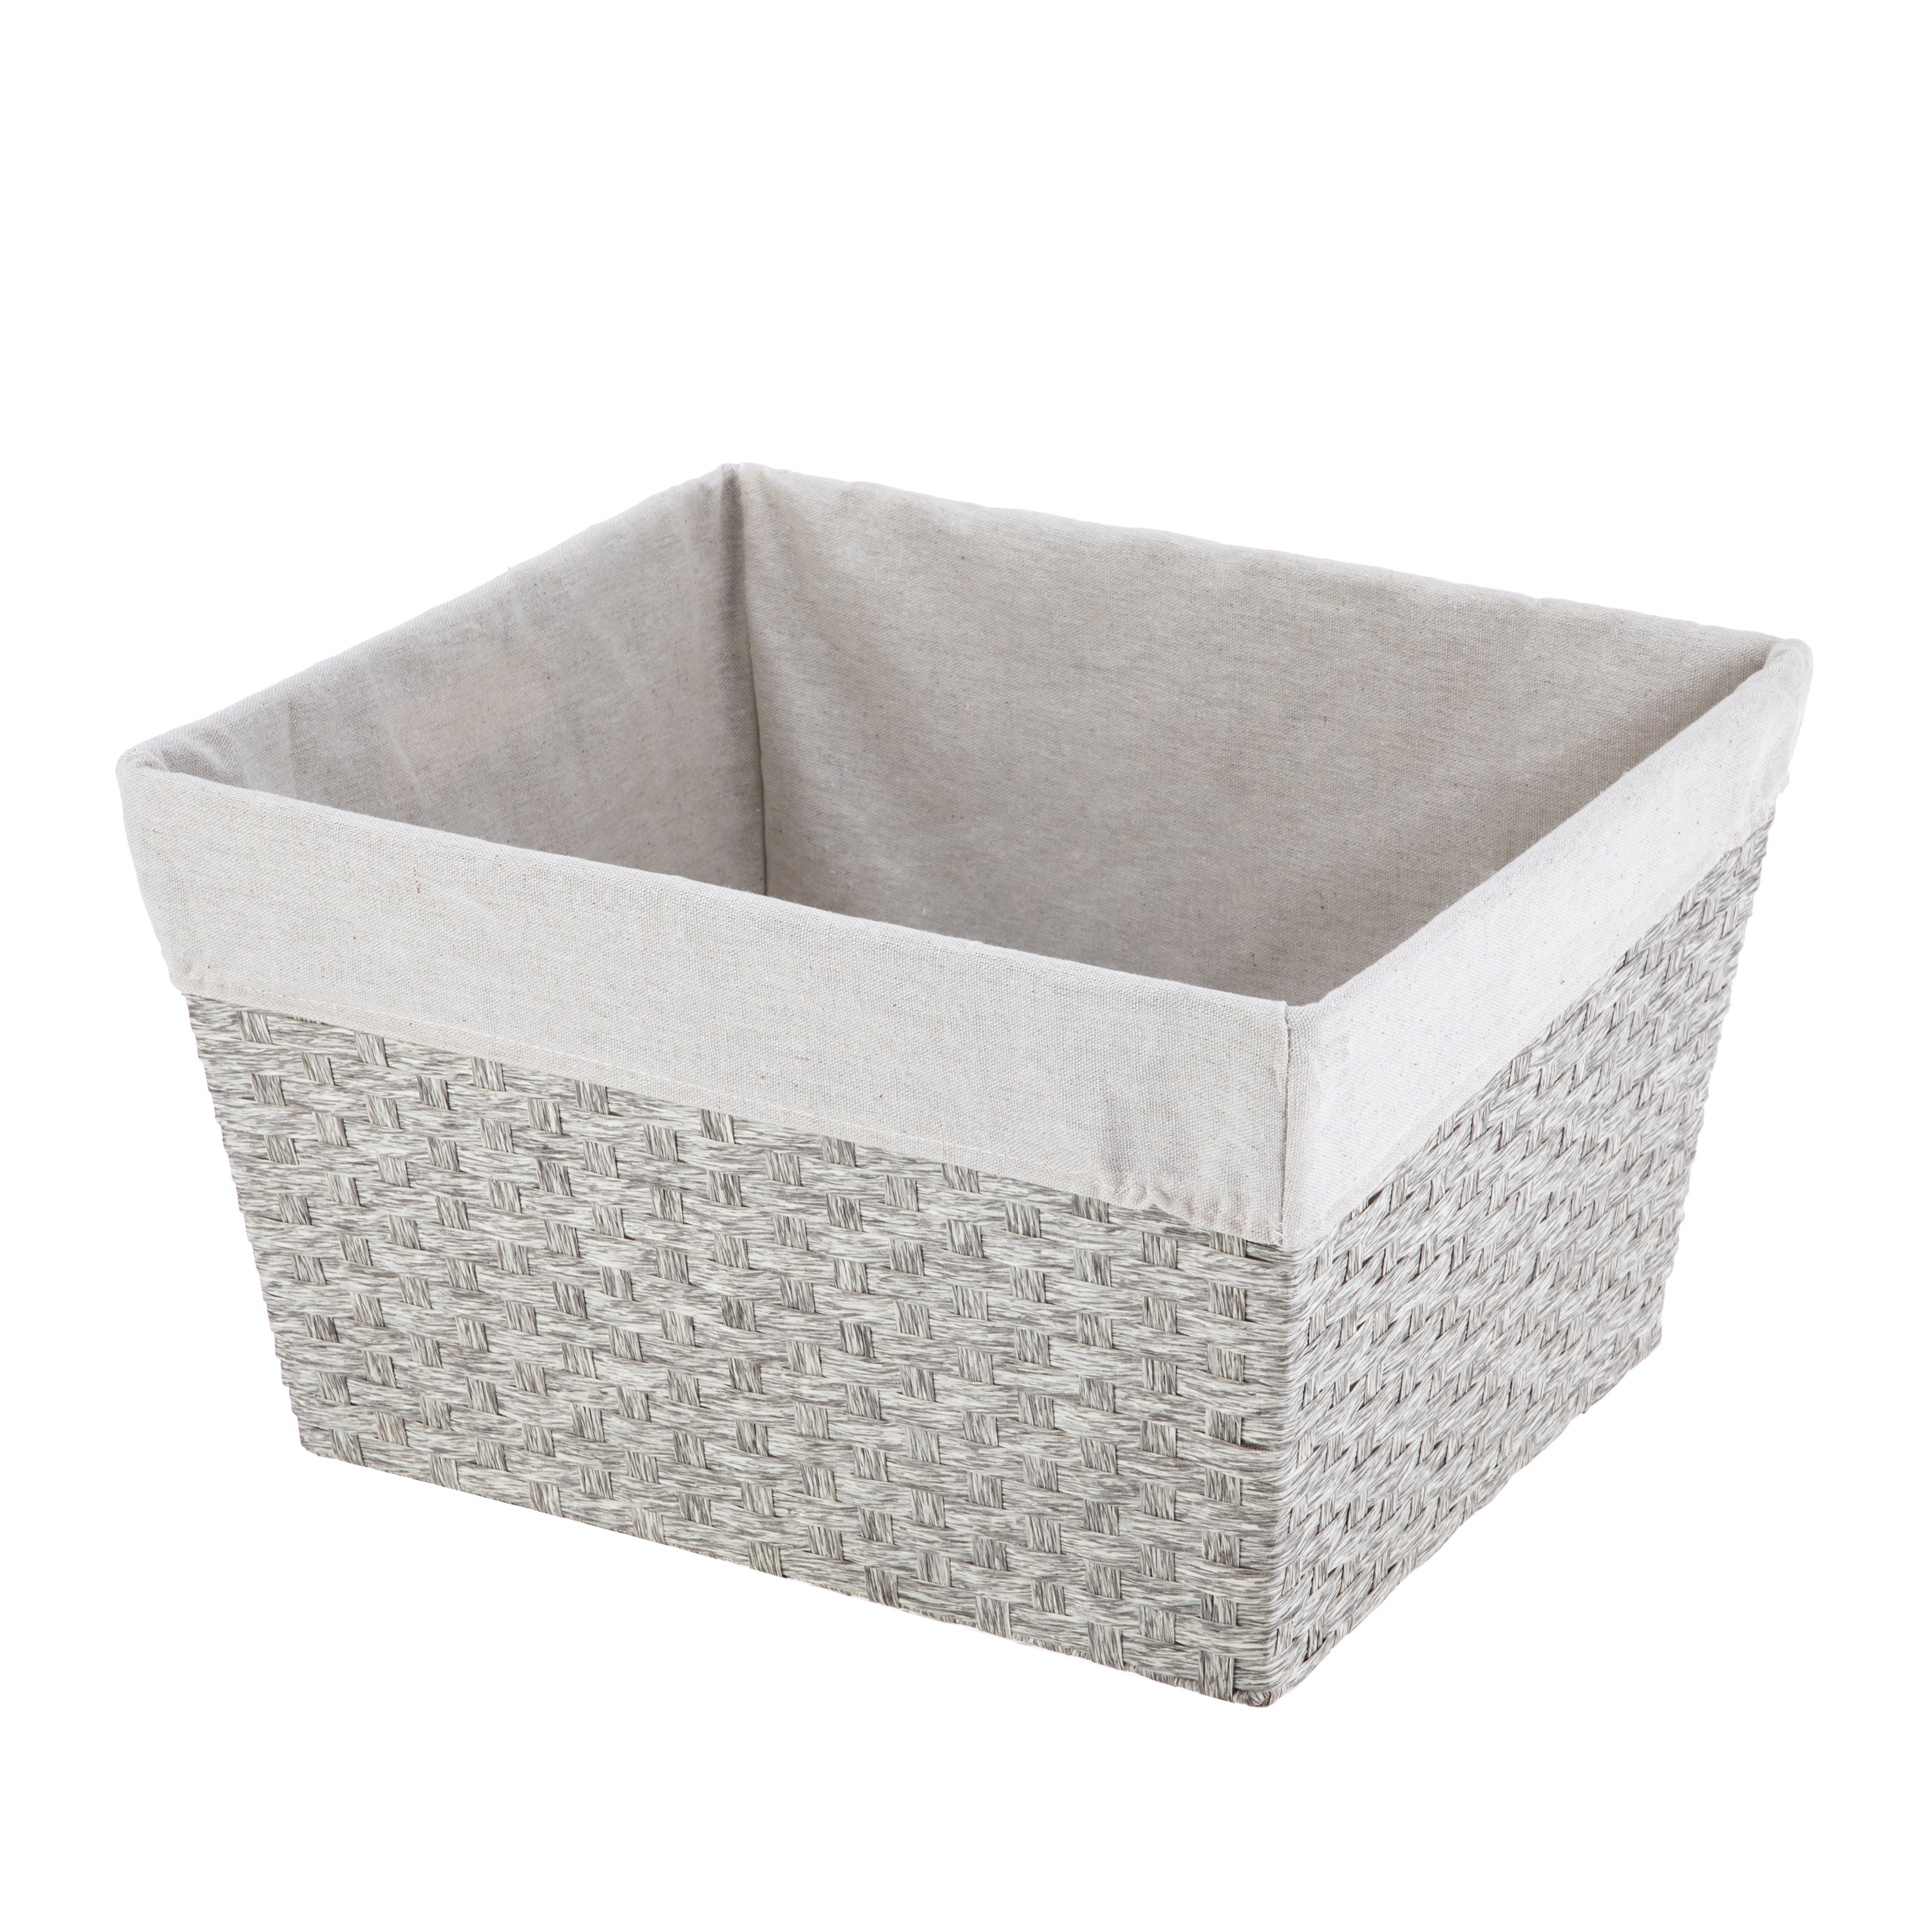 Bathroom Towel Face Cloth Flannel Cotton Wool Tidy Storage Organiser Basket Box 